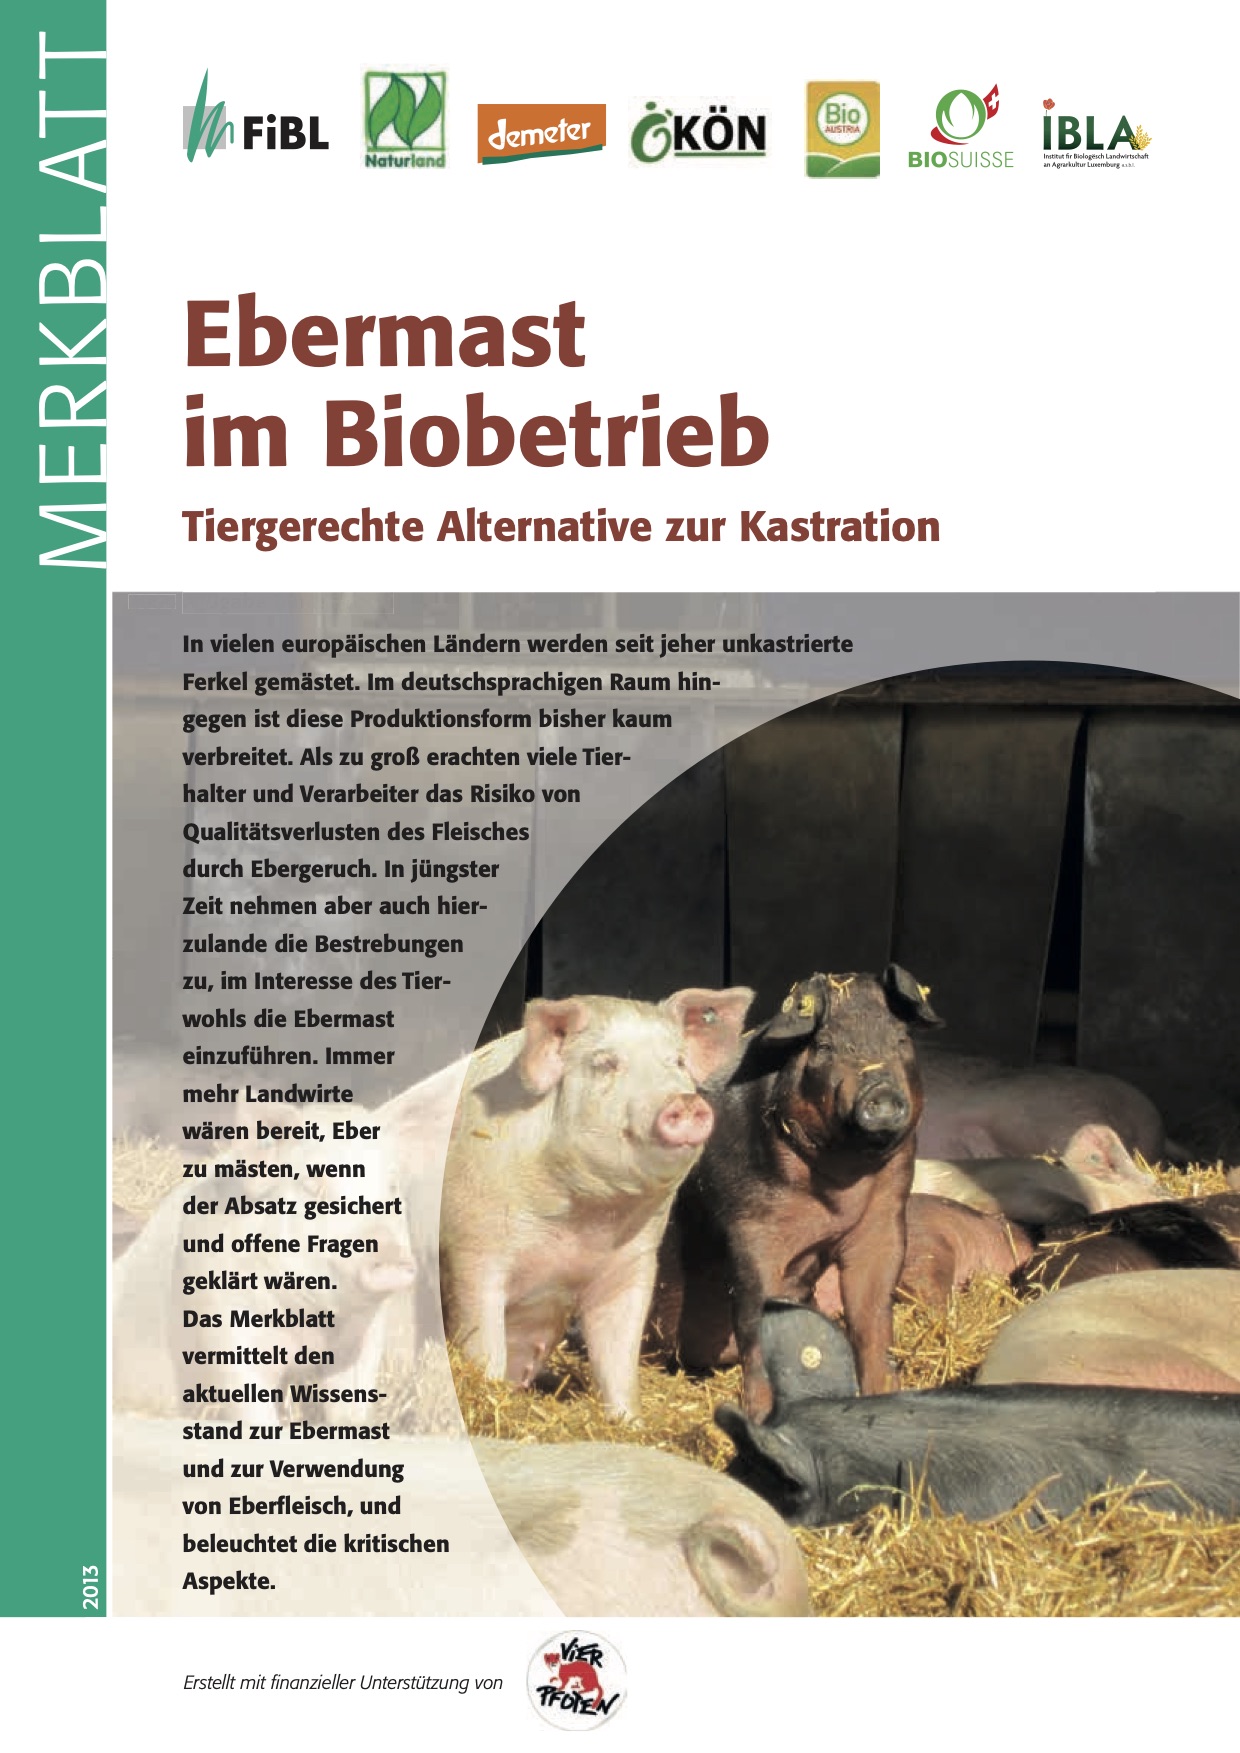 Vaddisznóhizlalás biofarmokon: állatbarát alternatíva a kasztrálás helyett